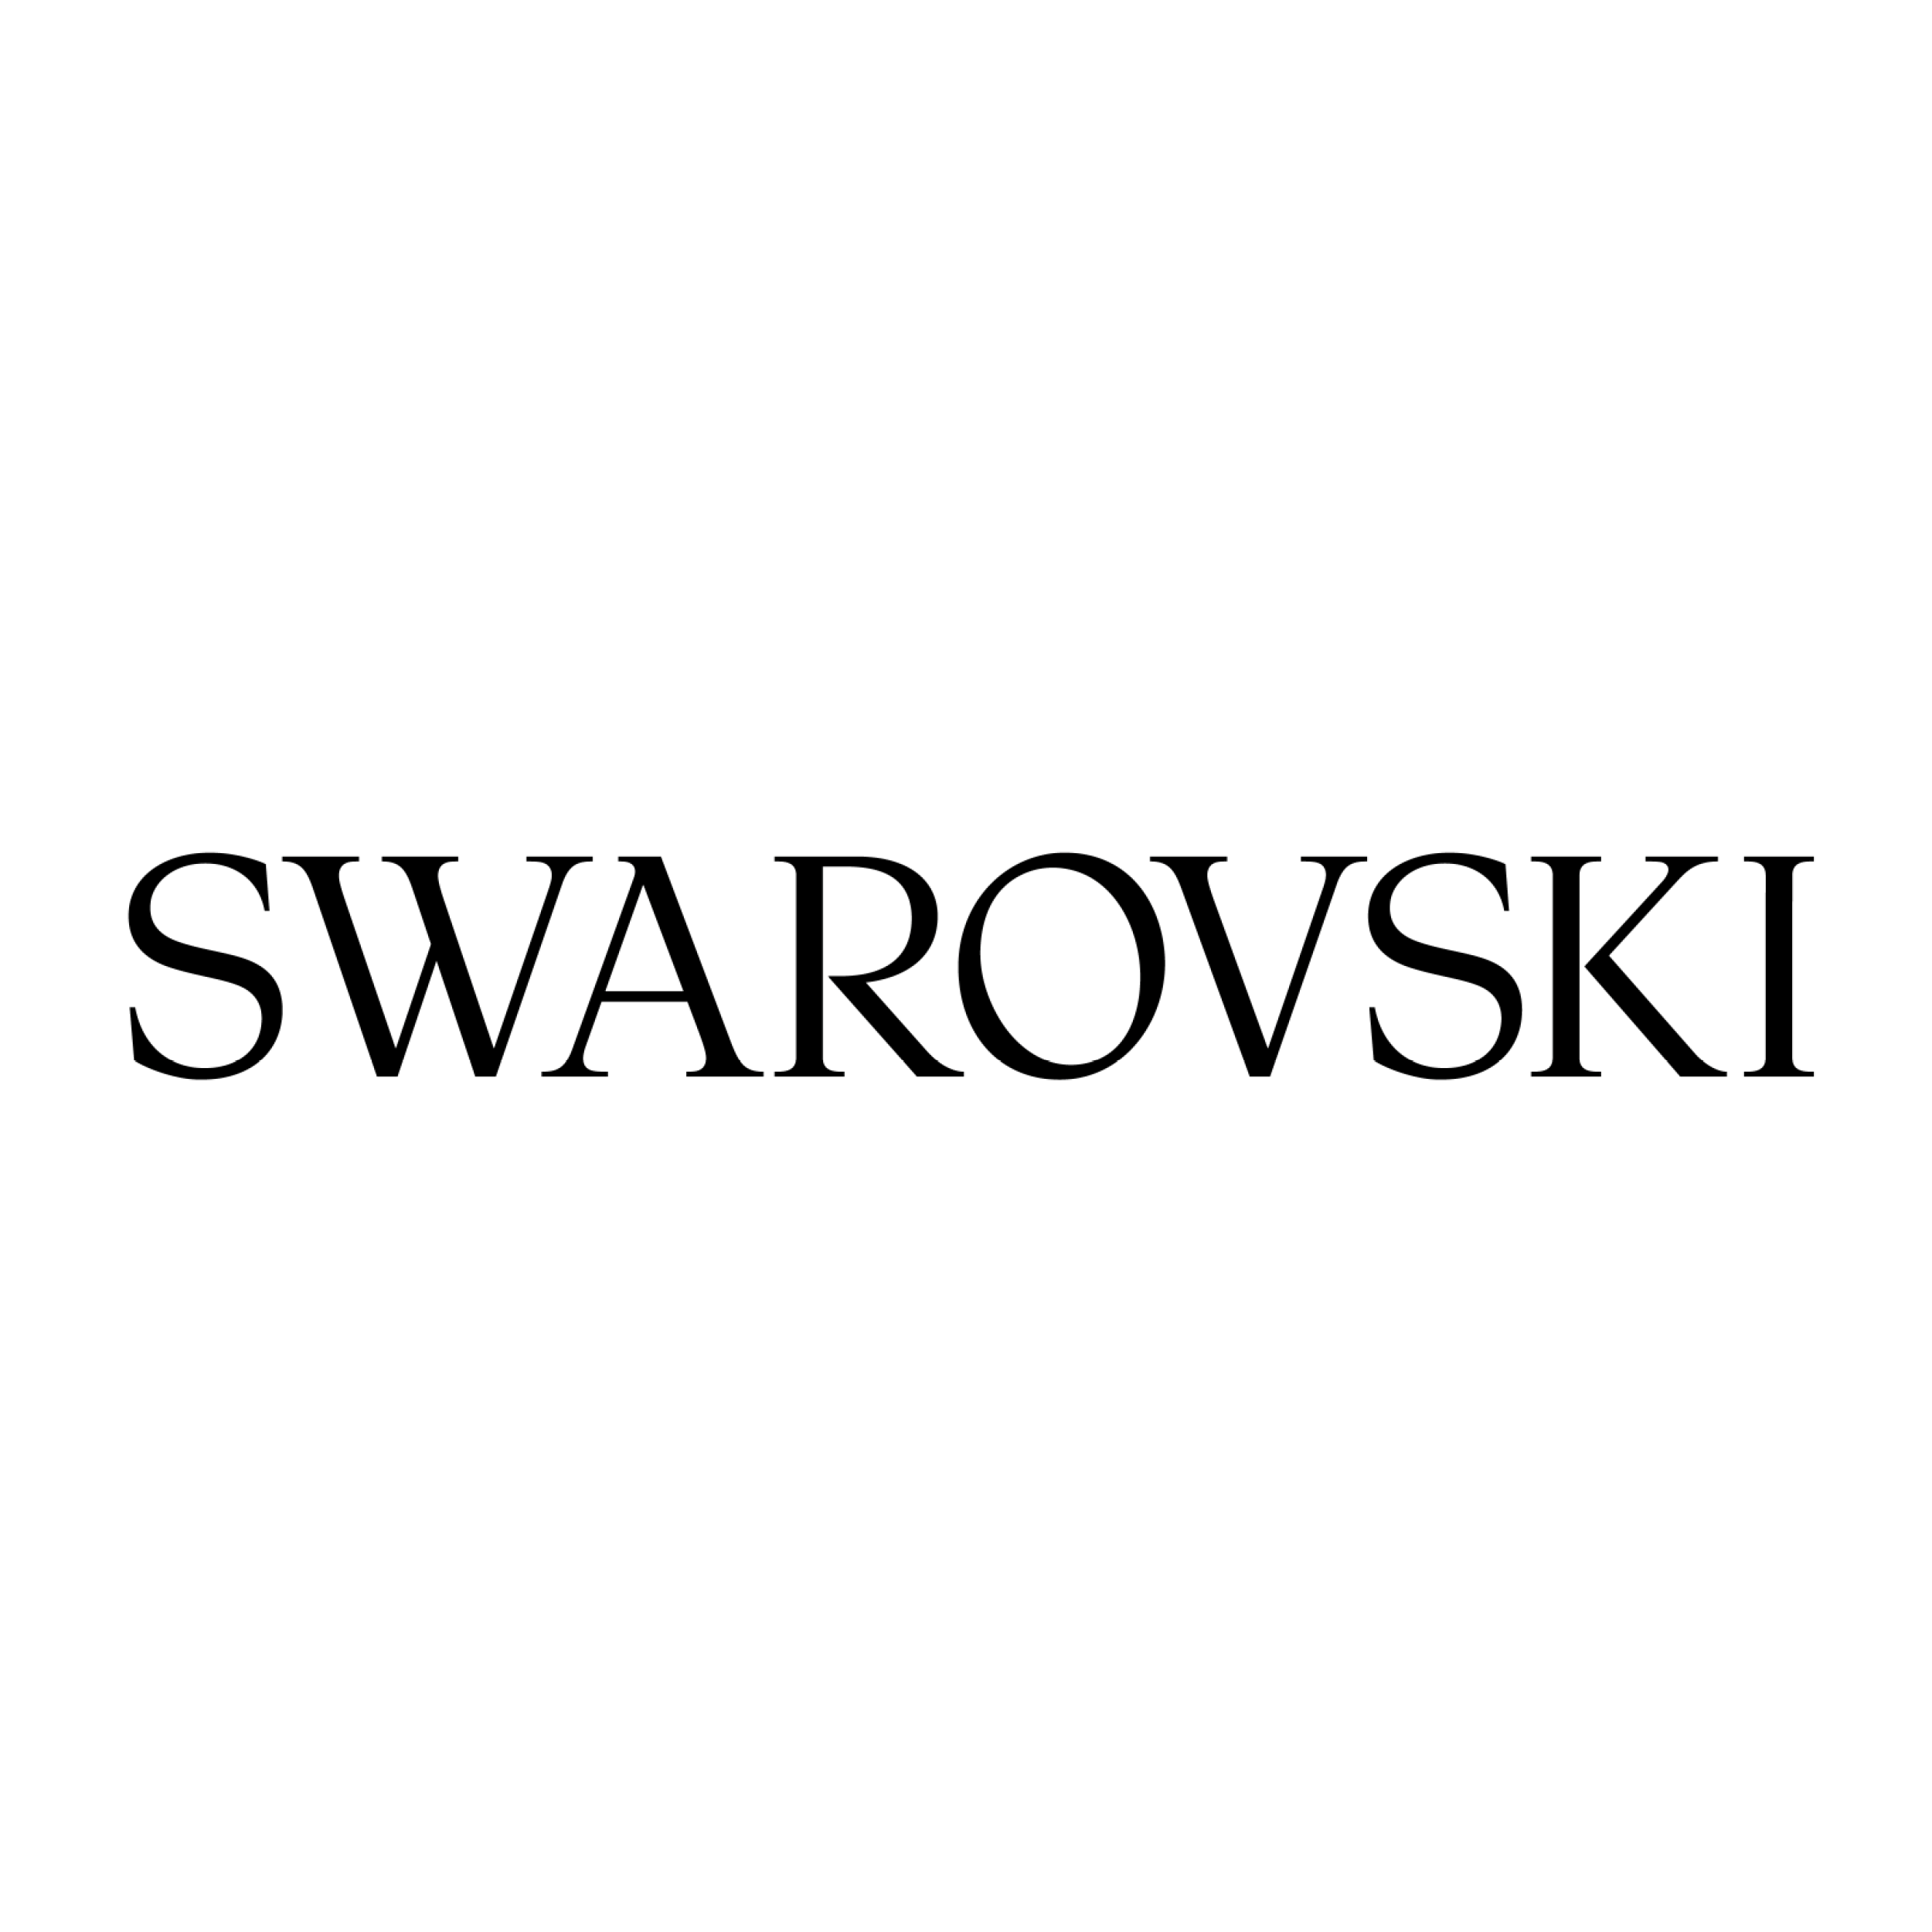 swarovski_logo_600x600px.png